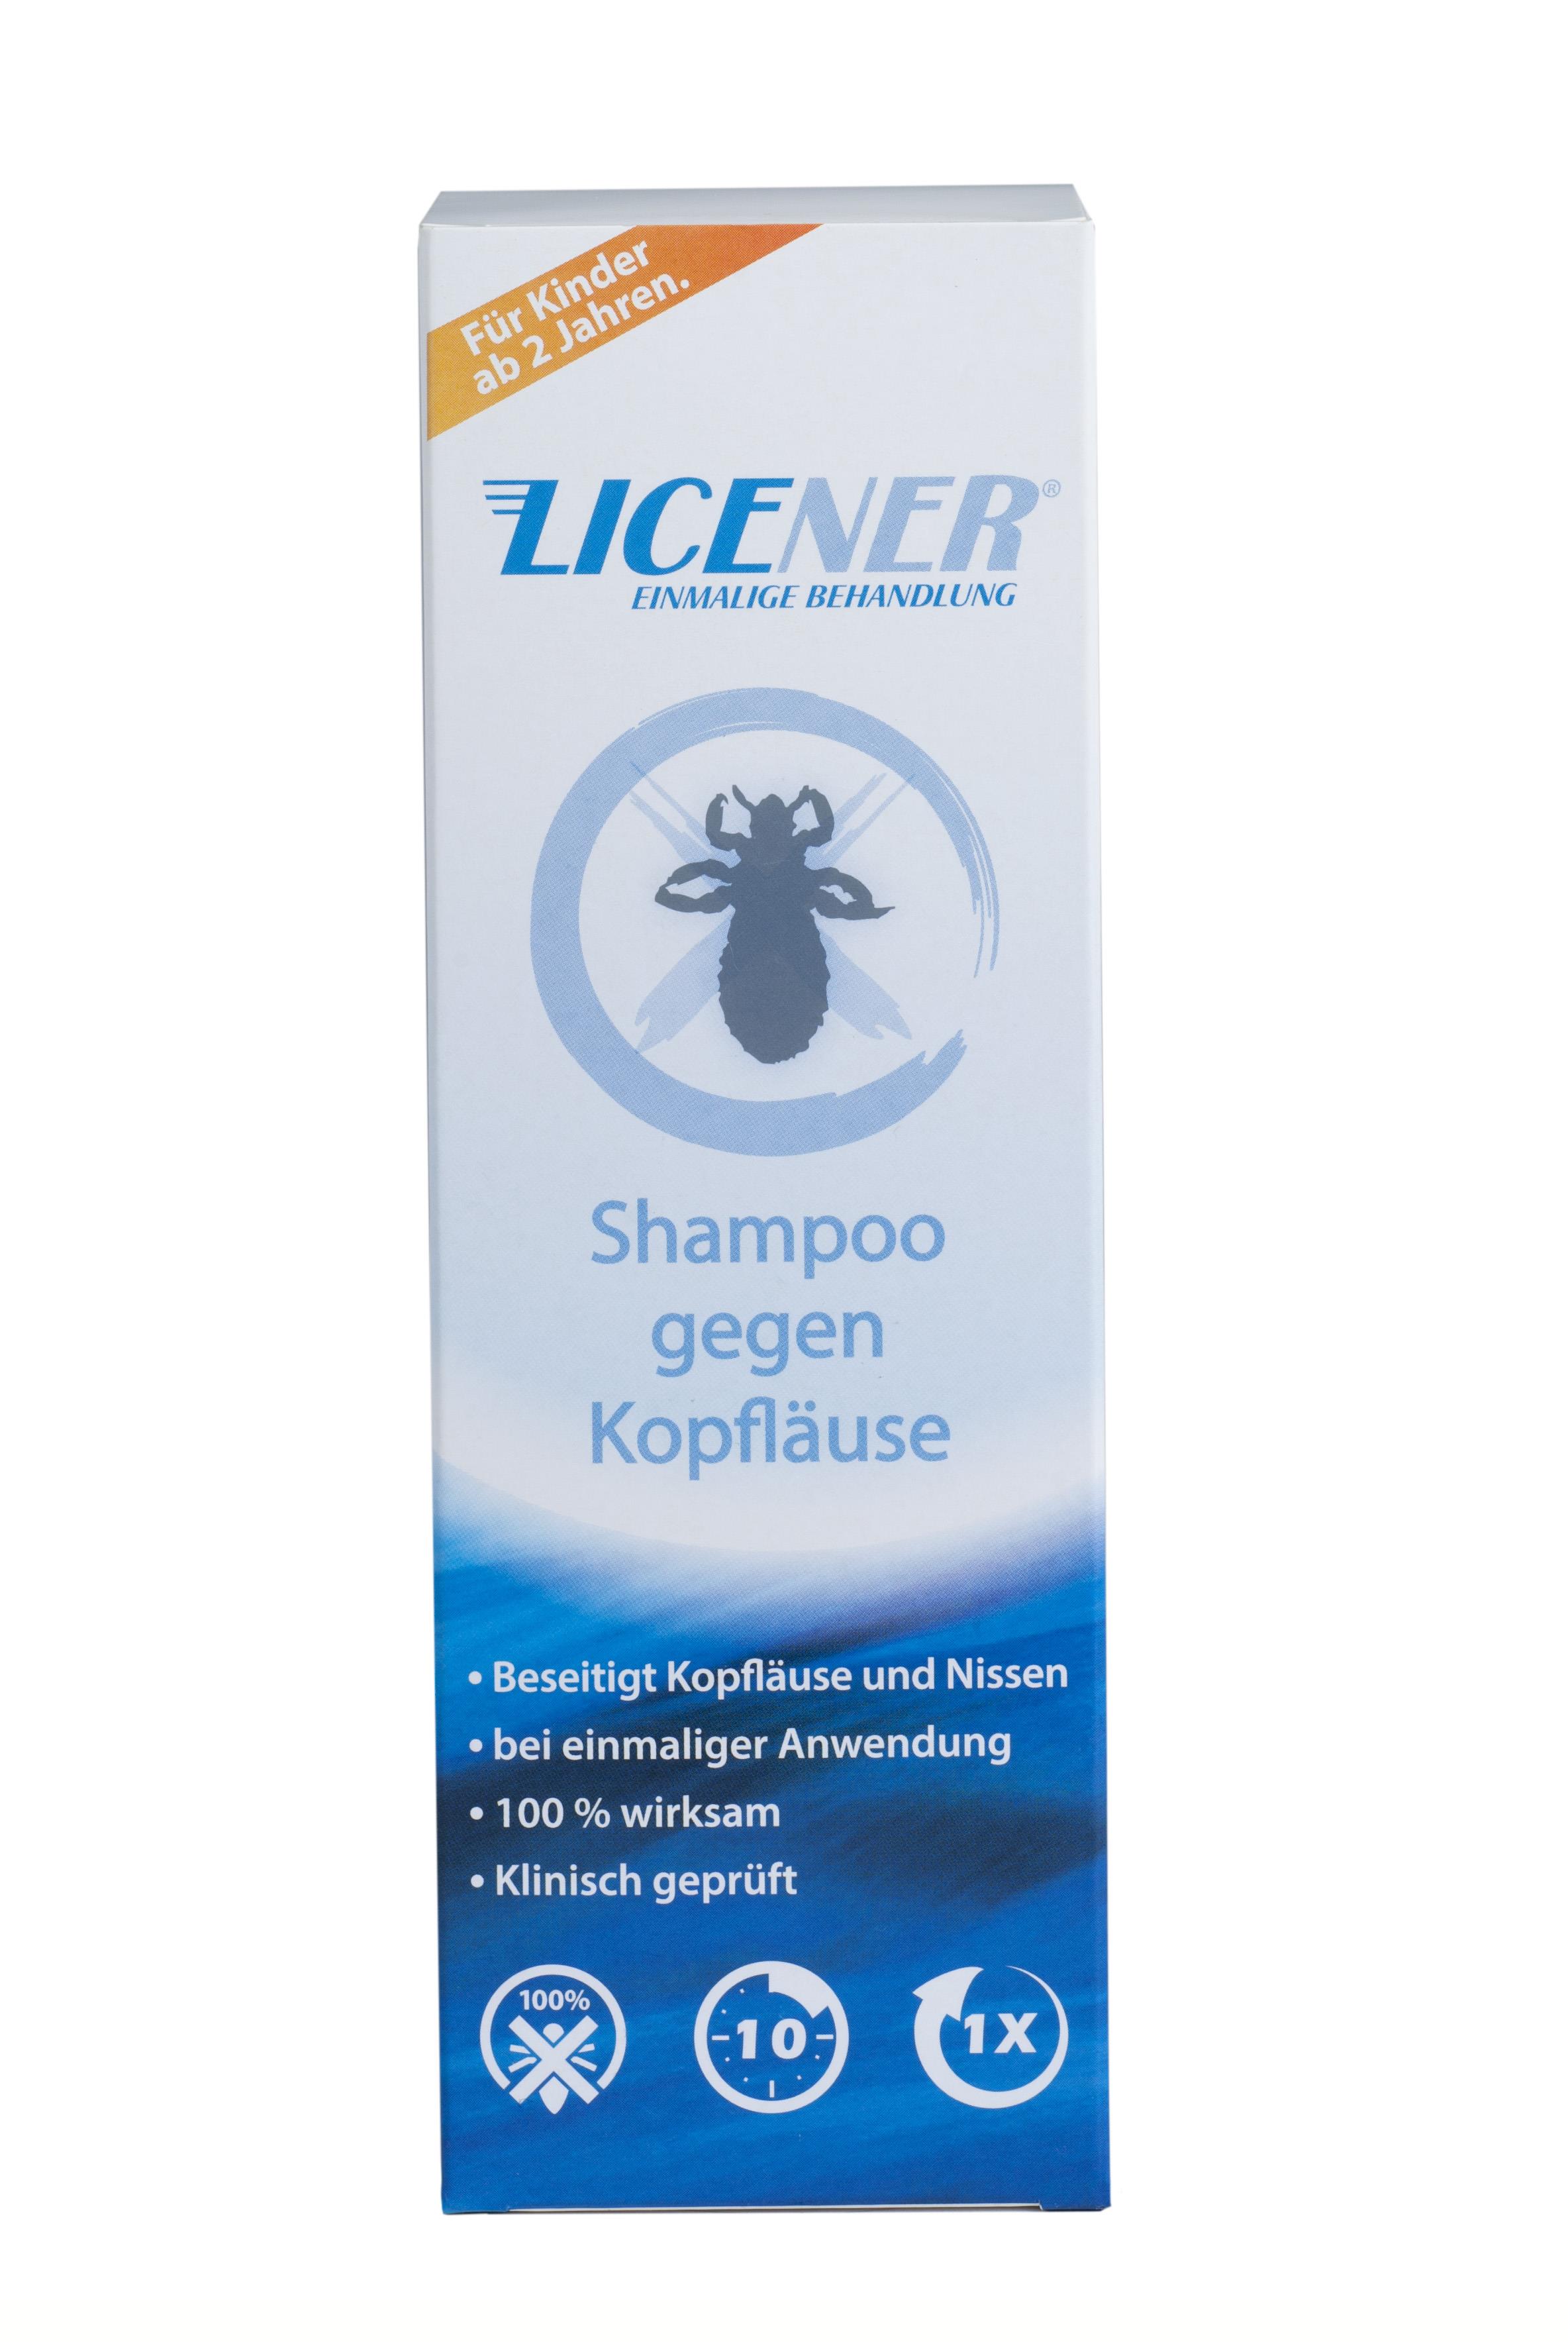 Licener -Shampoo gegen Kopfläuse